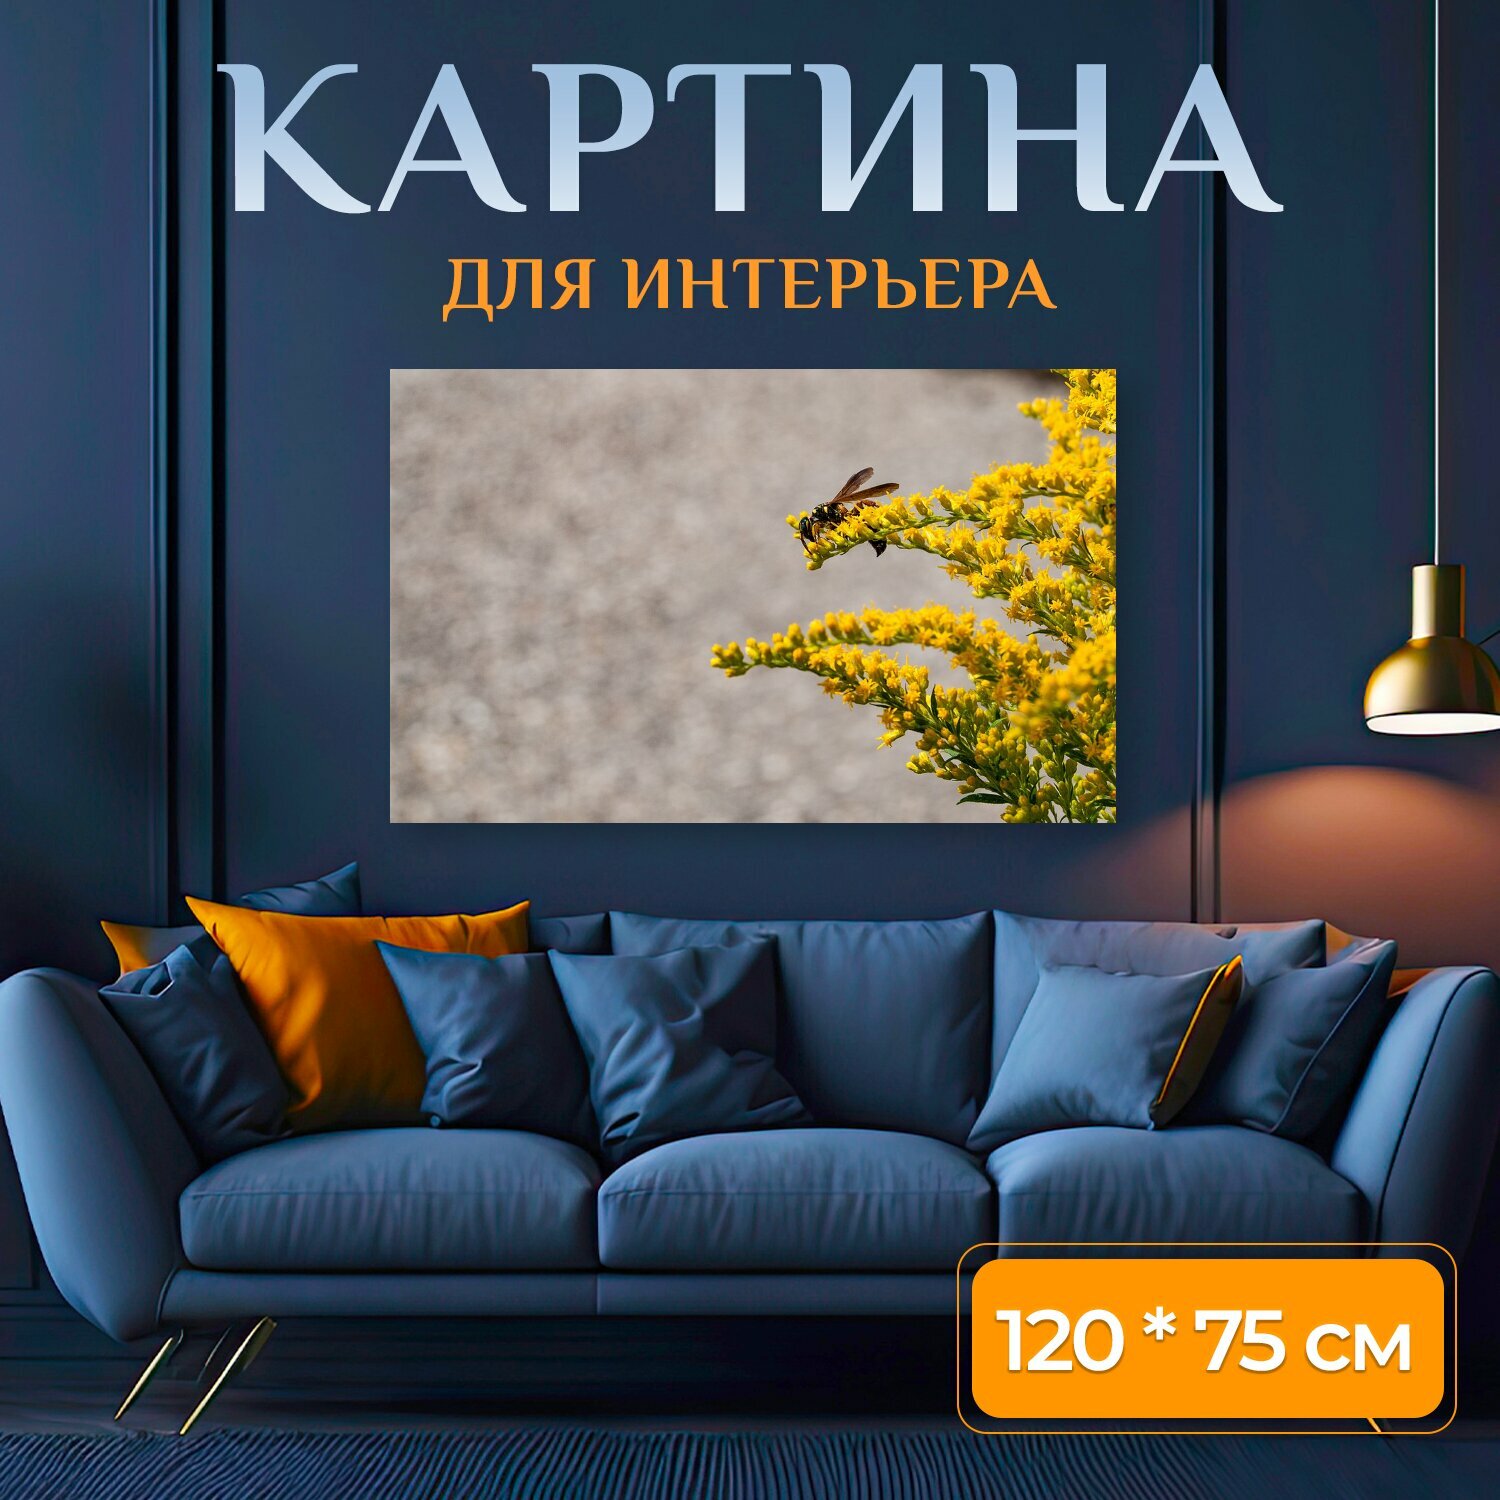 Картина на холсте "Оса, насекомое, жук" на подрамнике 120х75 см. для интерьера